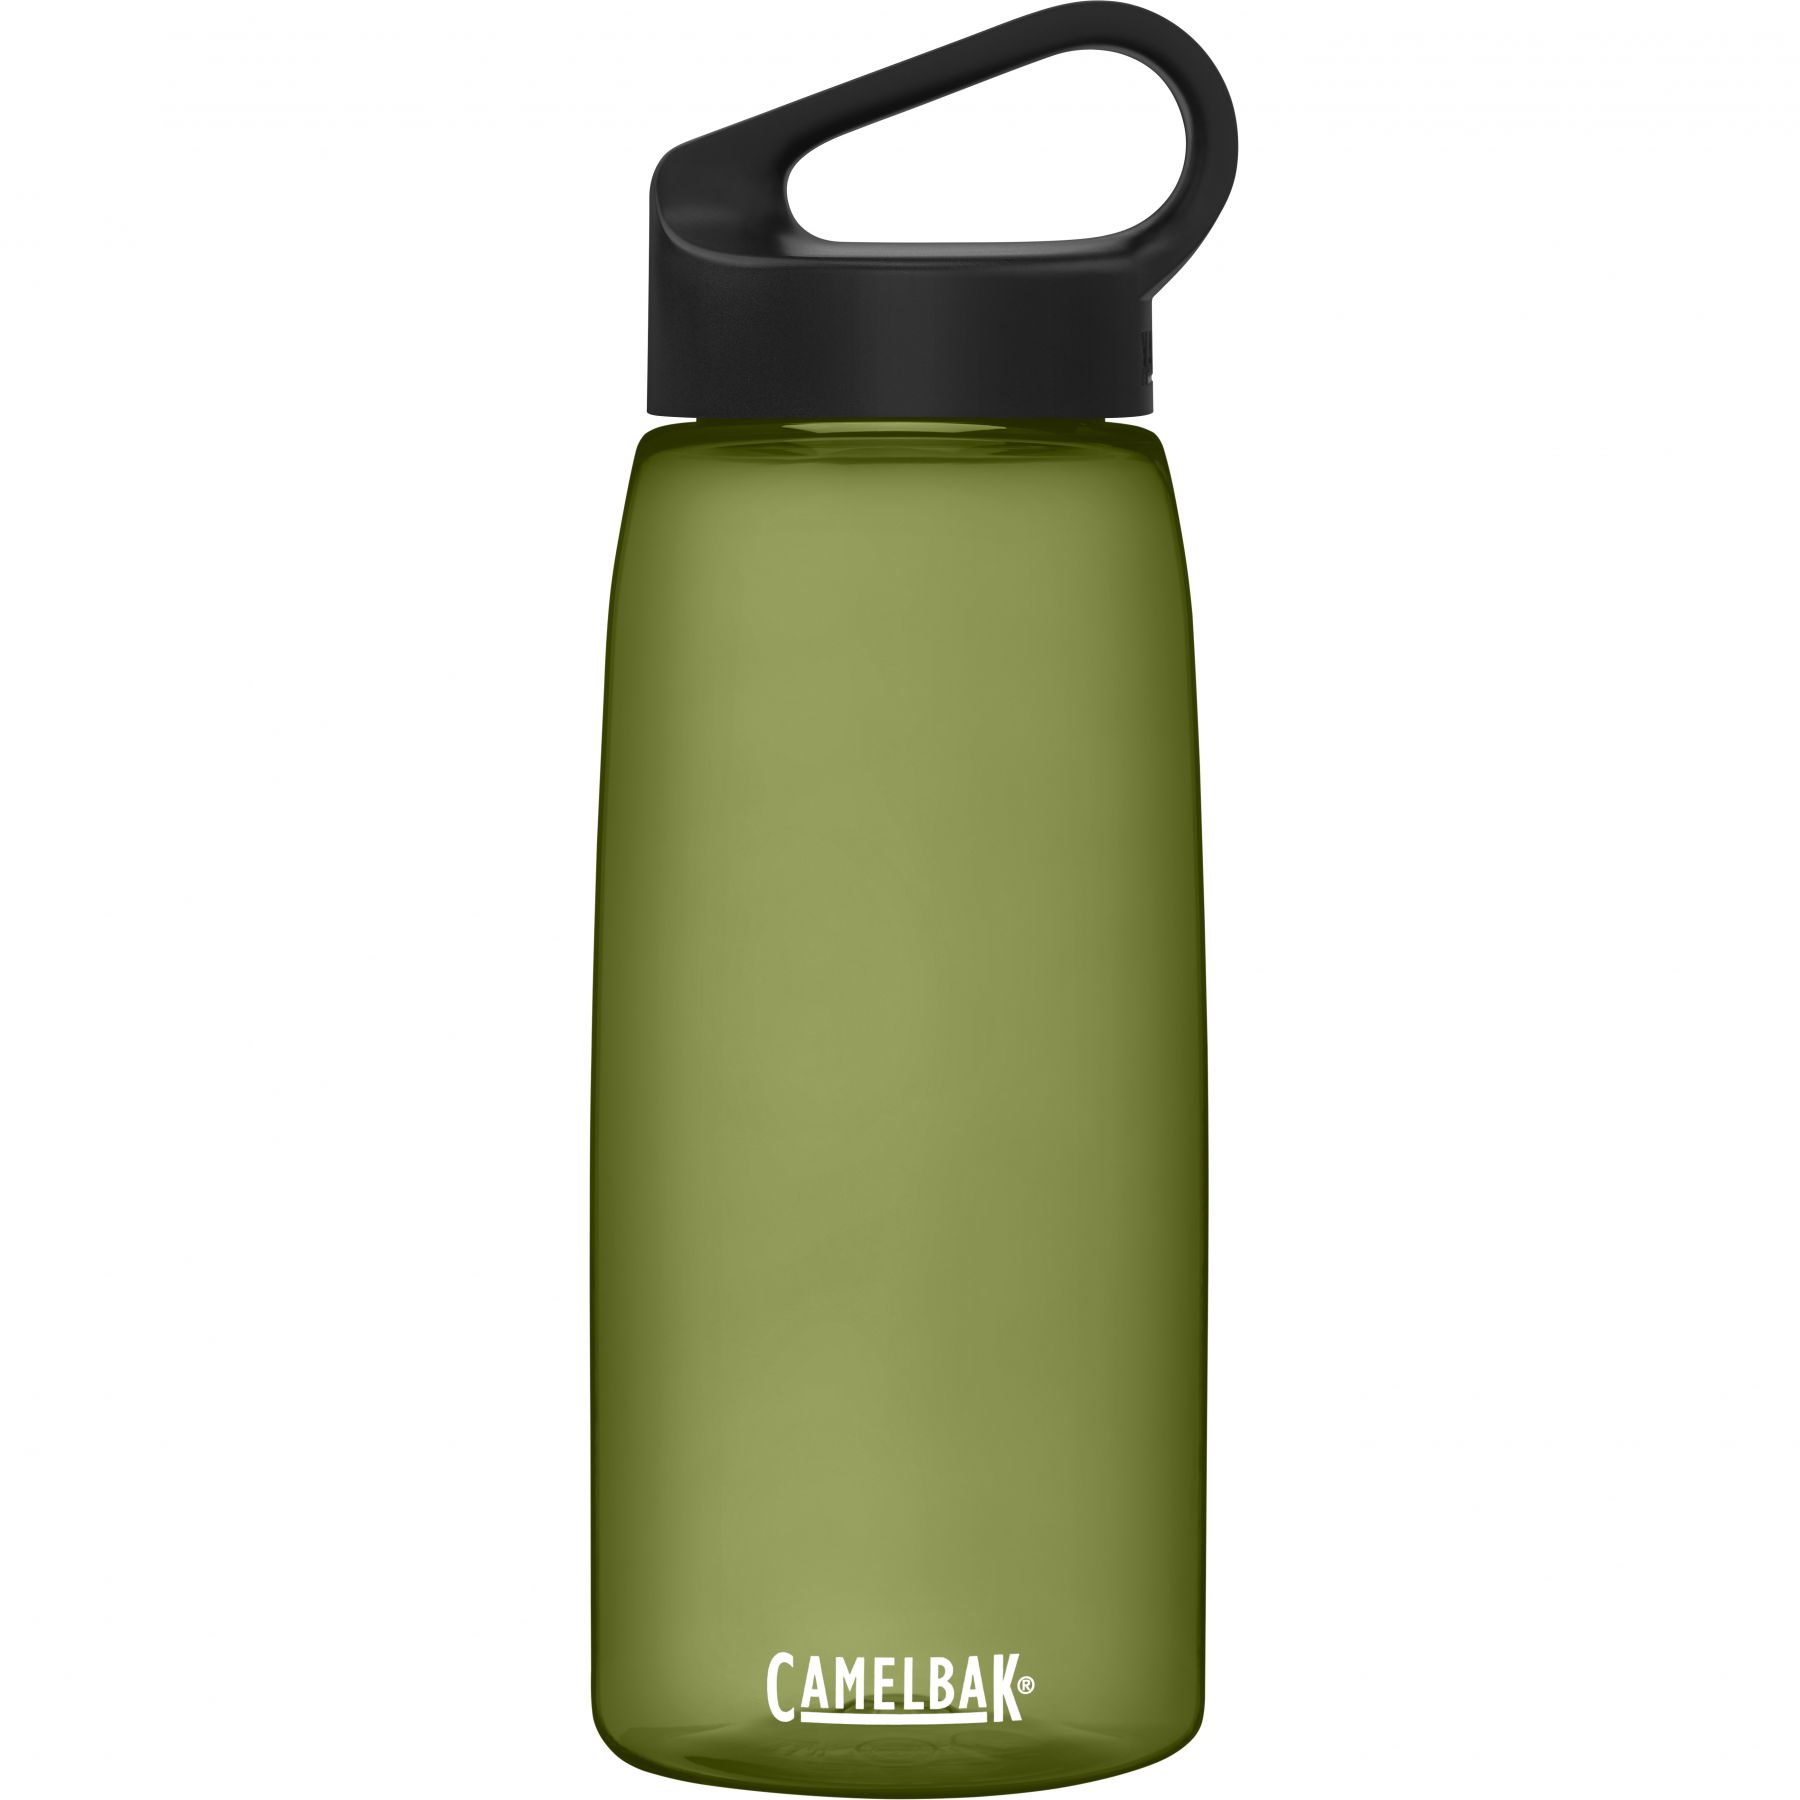 Brug CamelBak Carry Cap, drikkedunk, 1L, grøn til en forbedret oplevelse